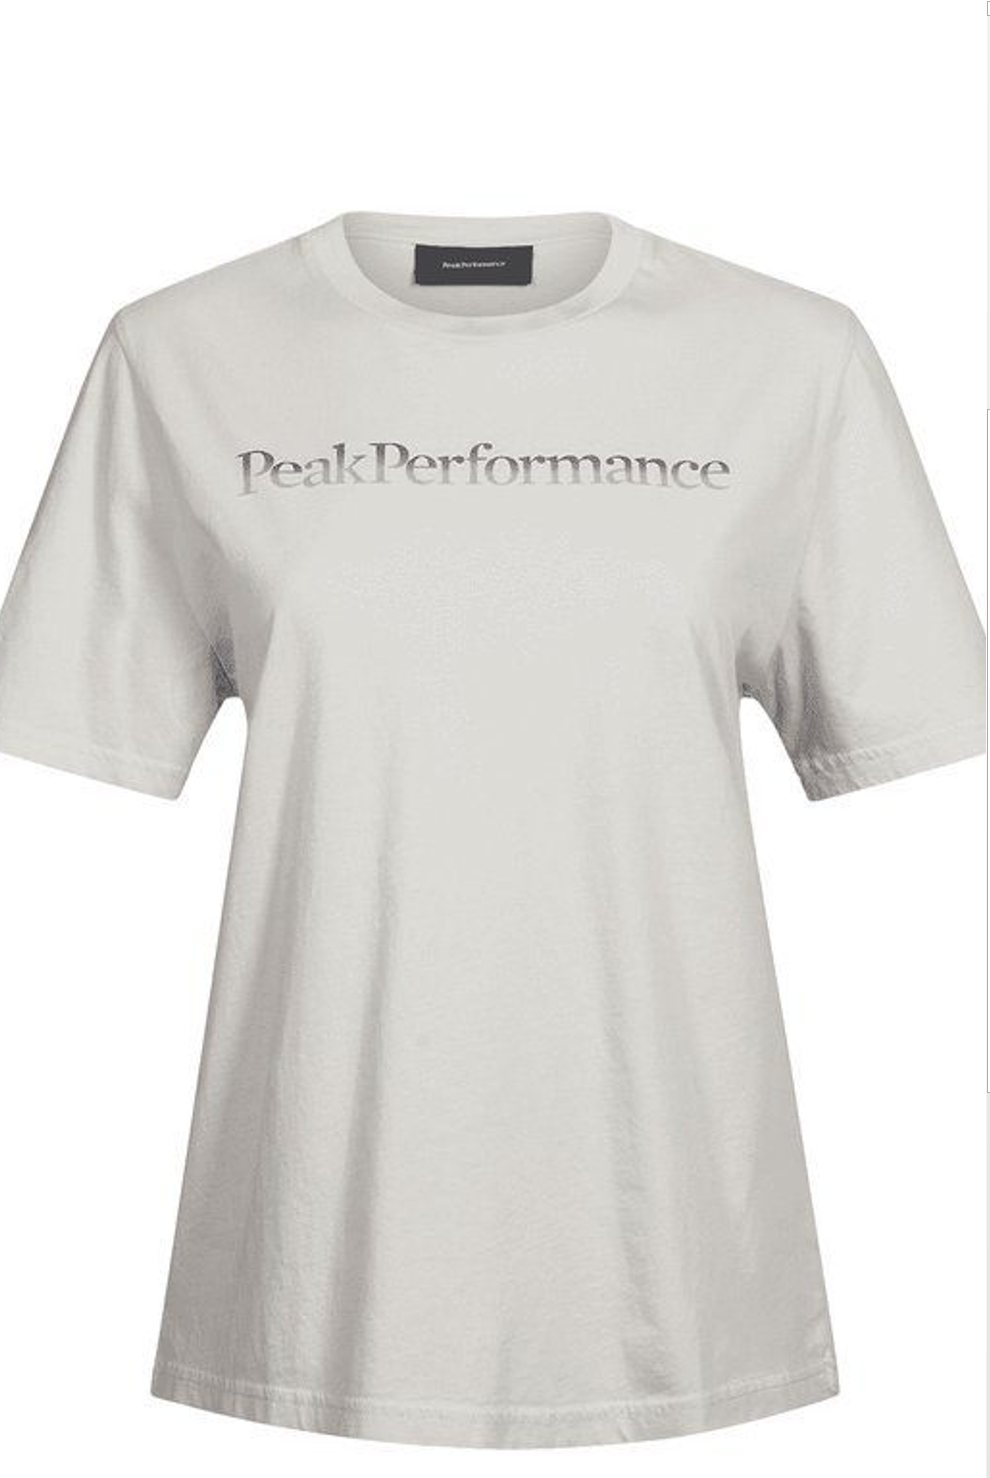 Peak Performance Damen Orginal Shirt hell - L